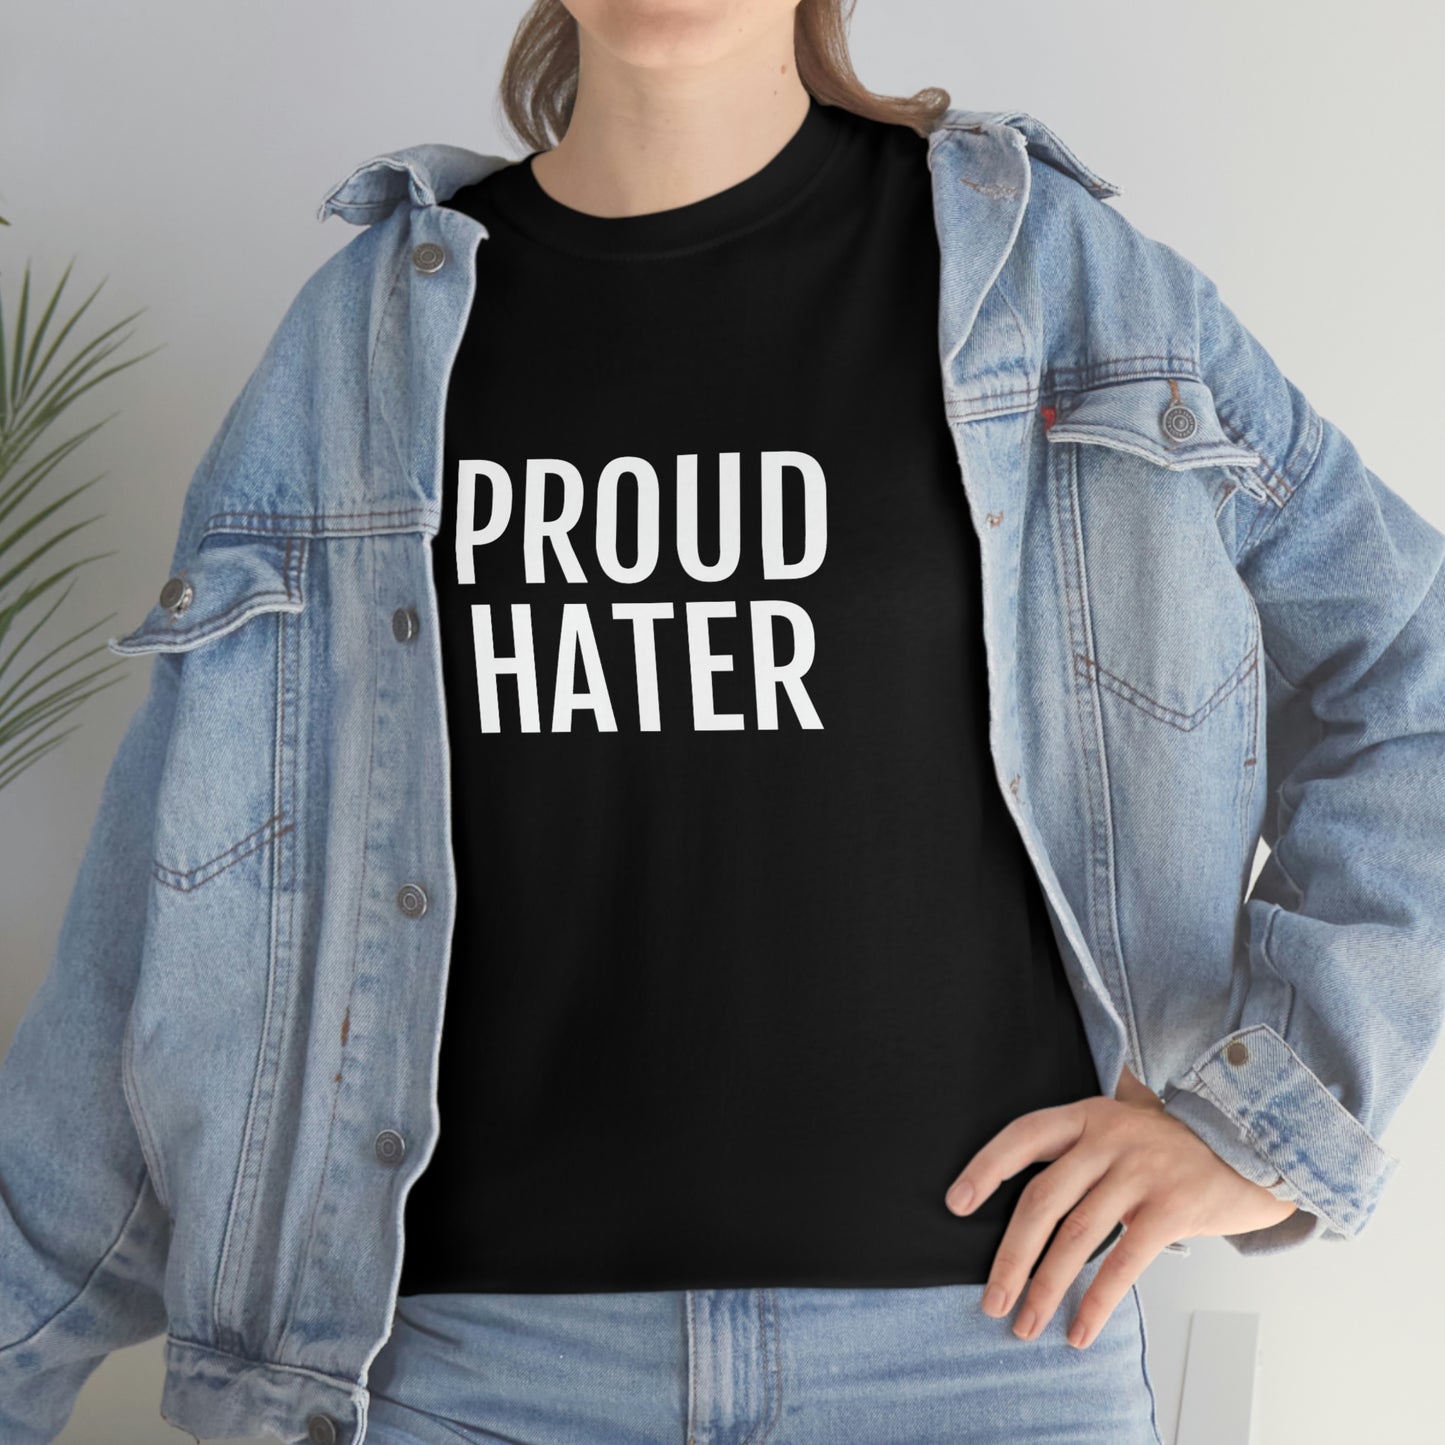 PROUD HATER T-SHIRT